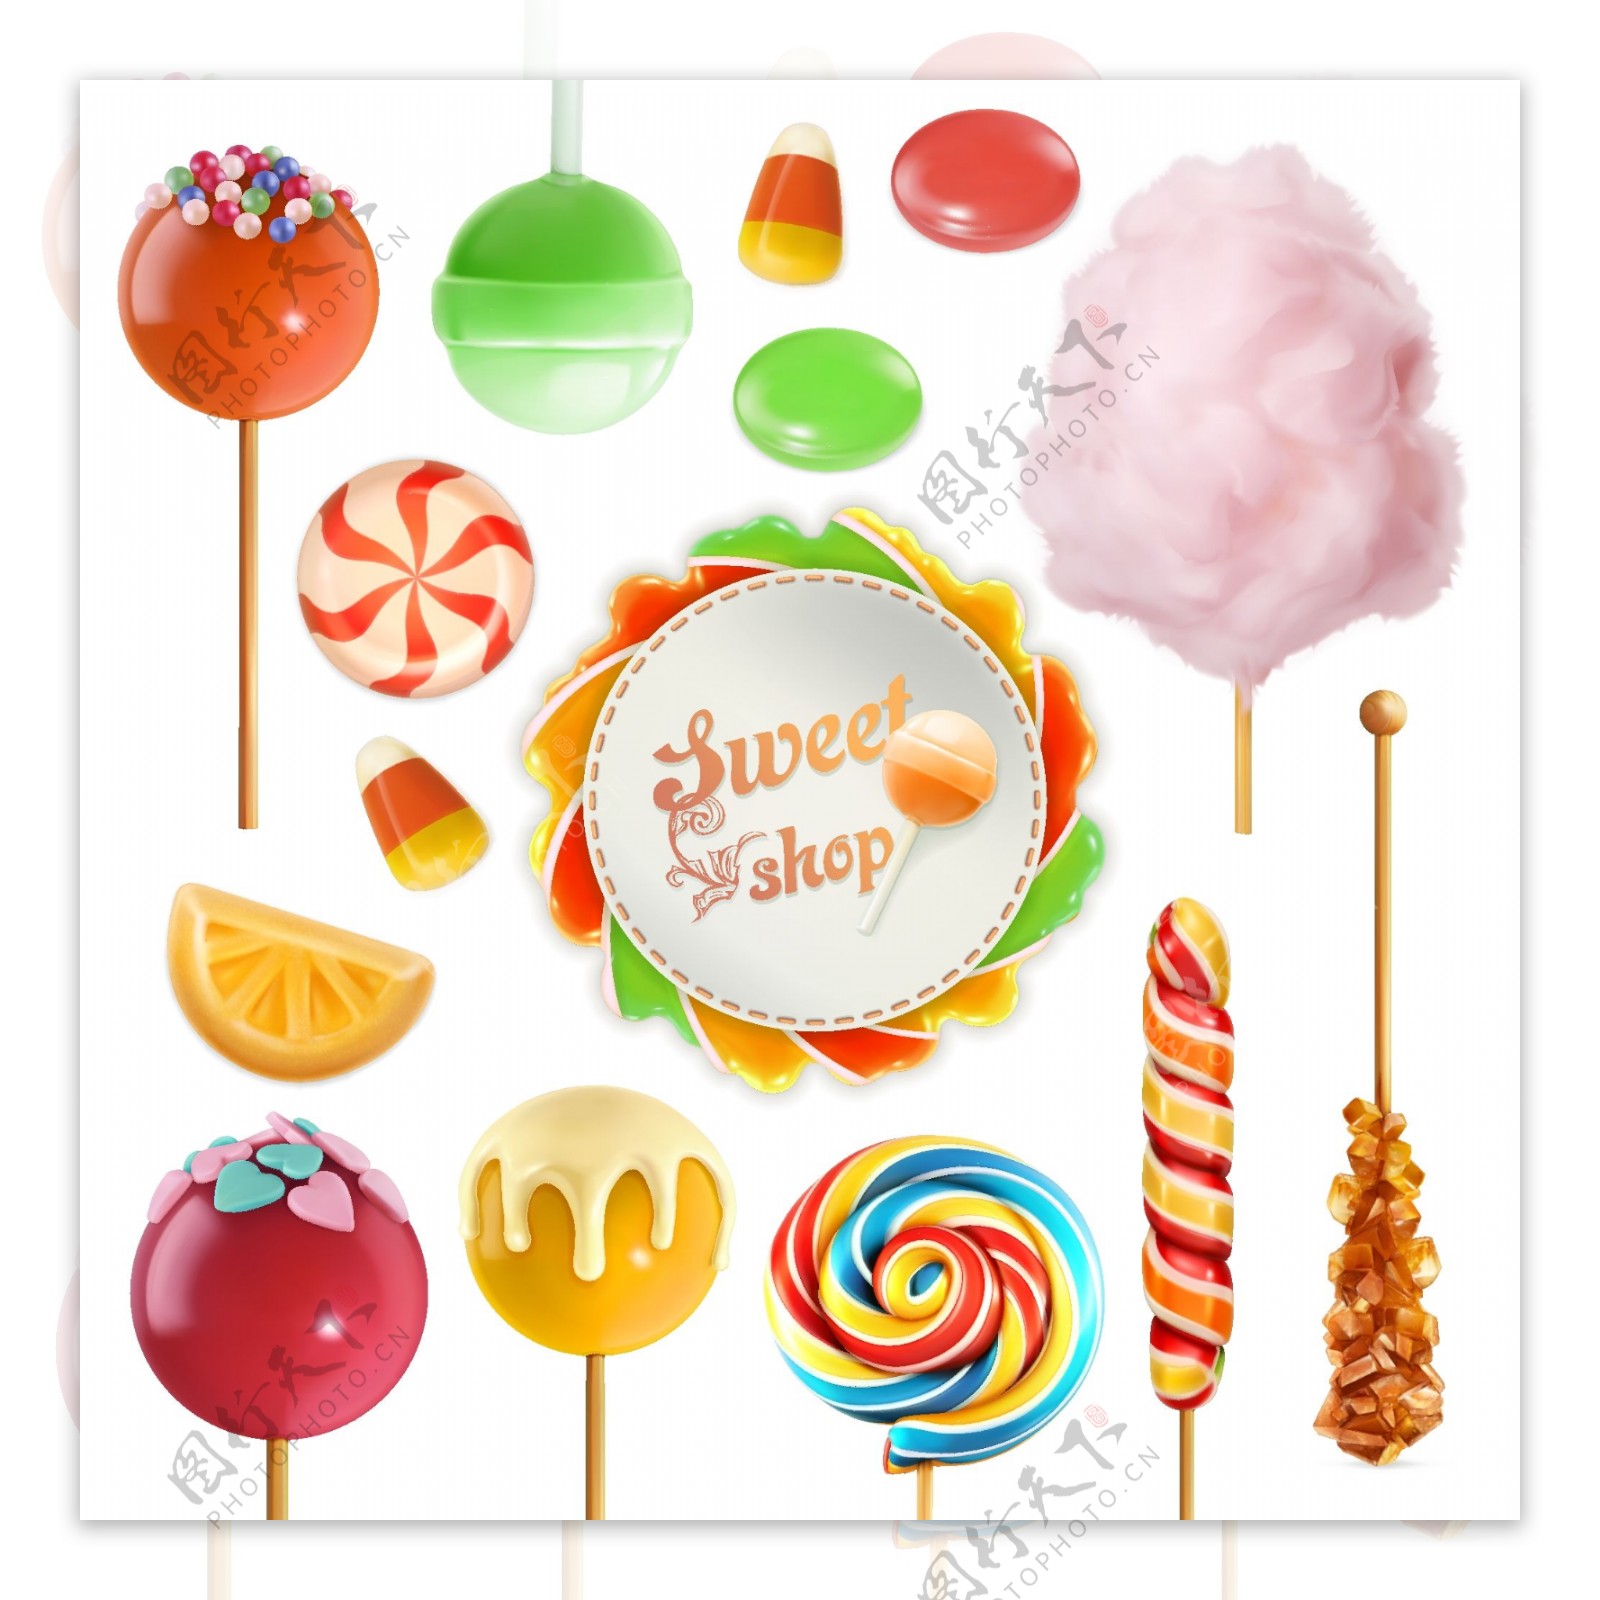 多款彩色糖果食品卡通矢量素材